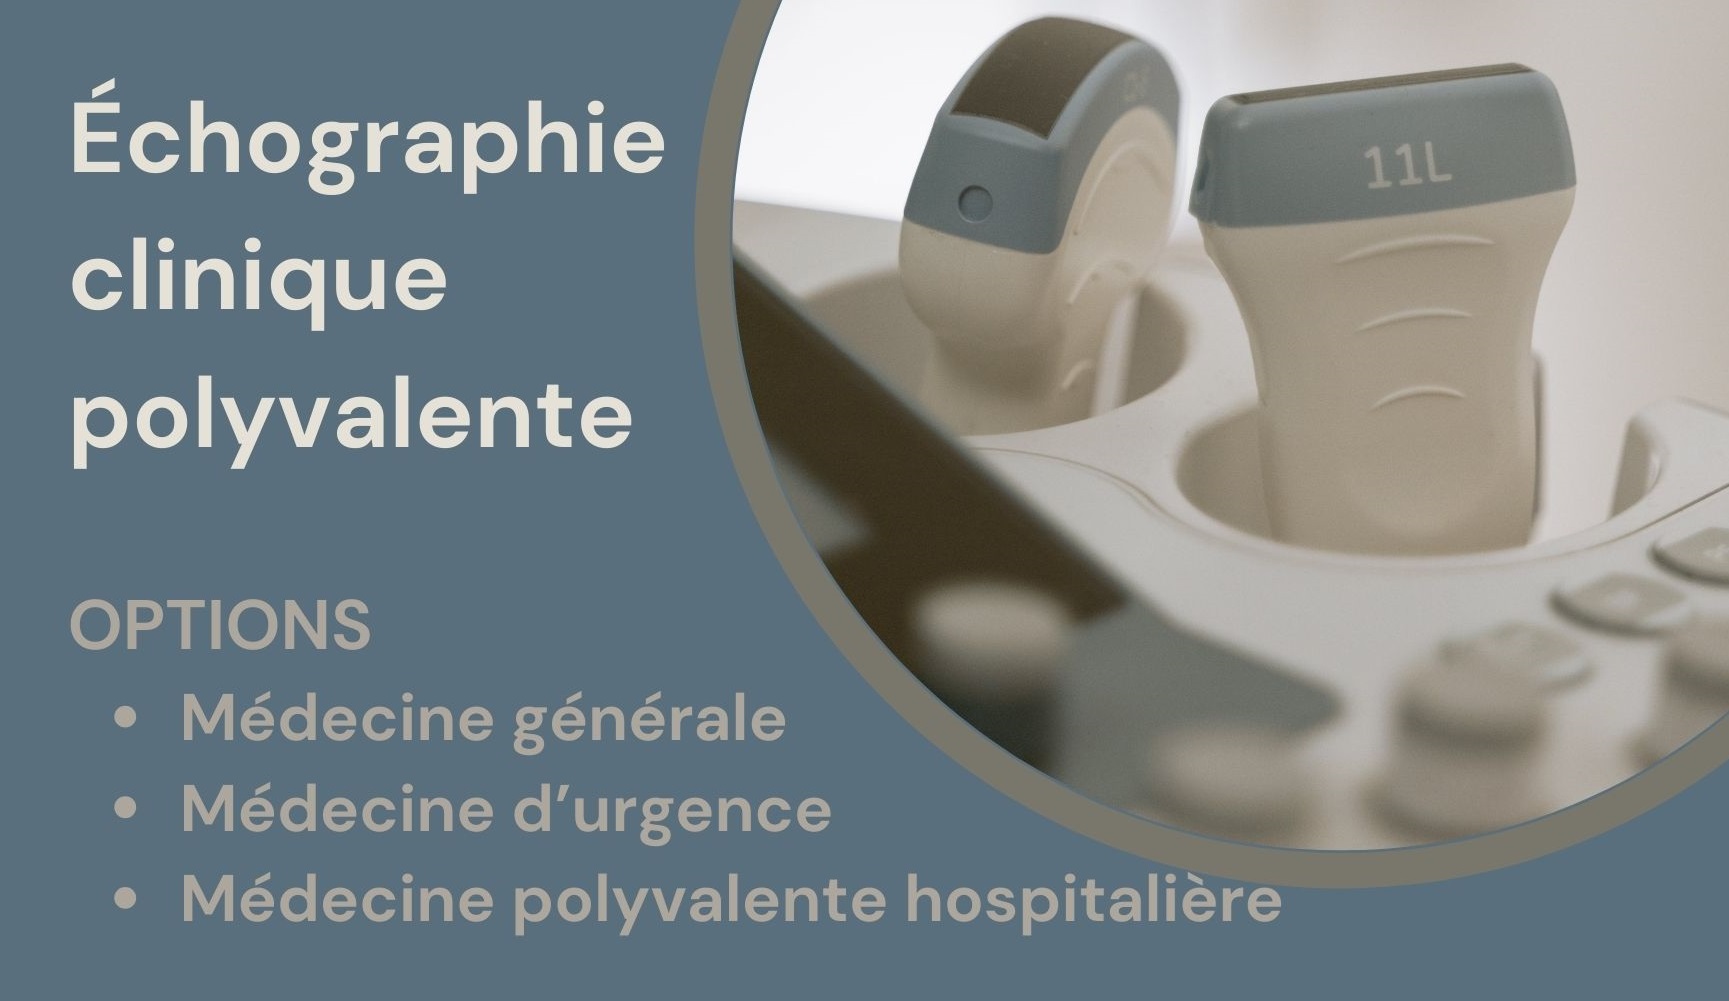 Échographie clinique polyvalente : diplôme université du Pôle Santé de Nantes Université